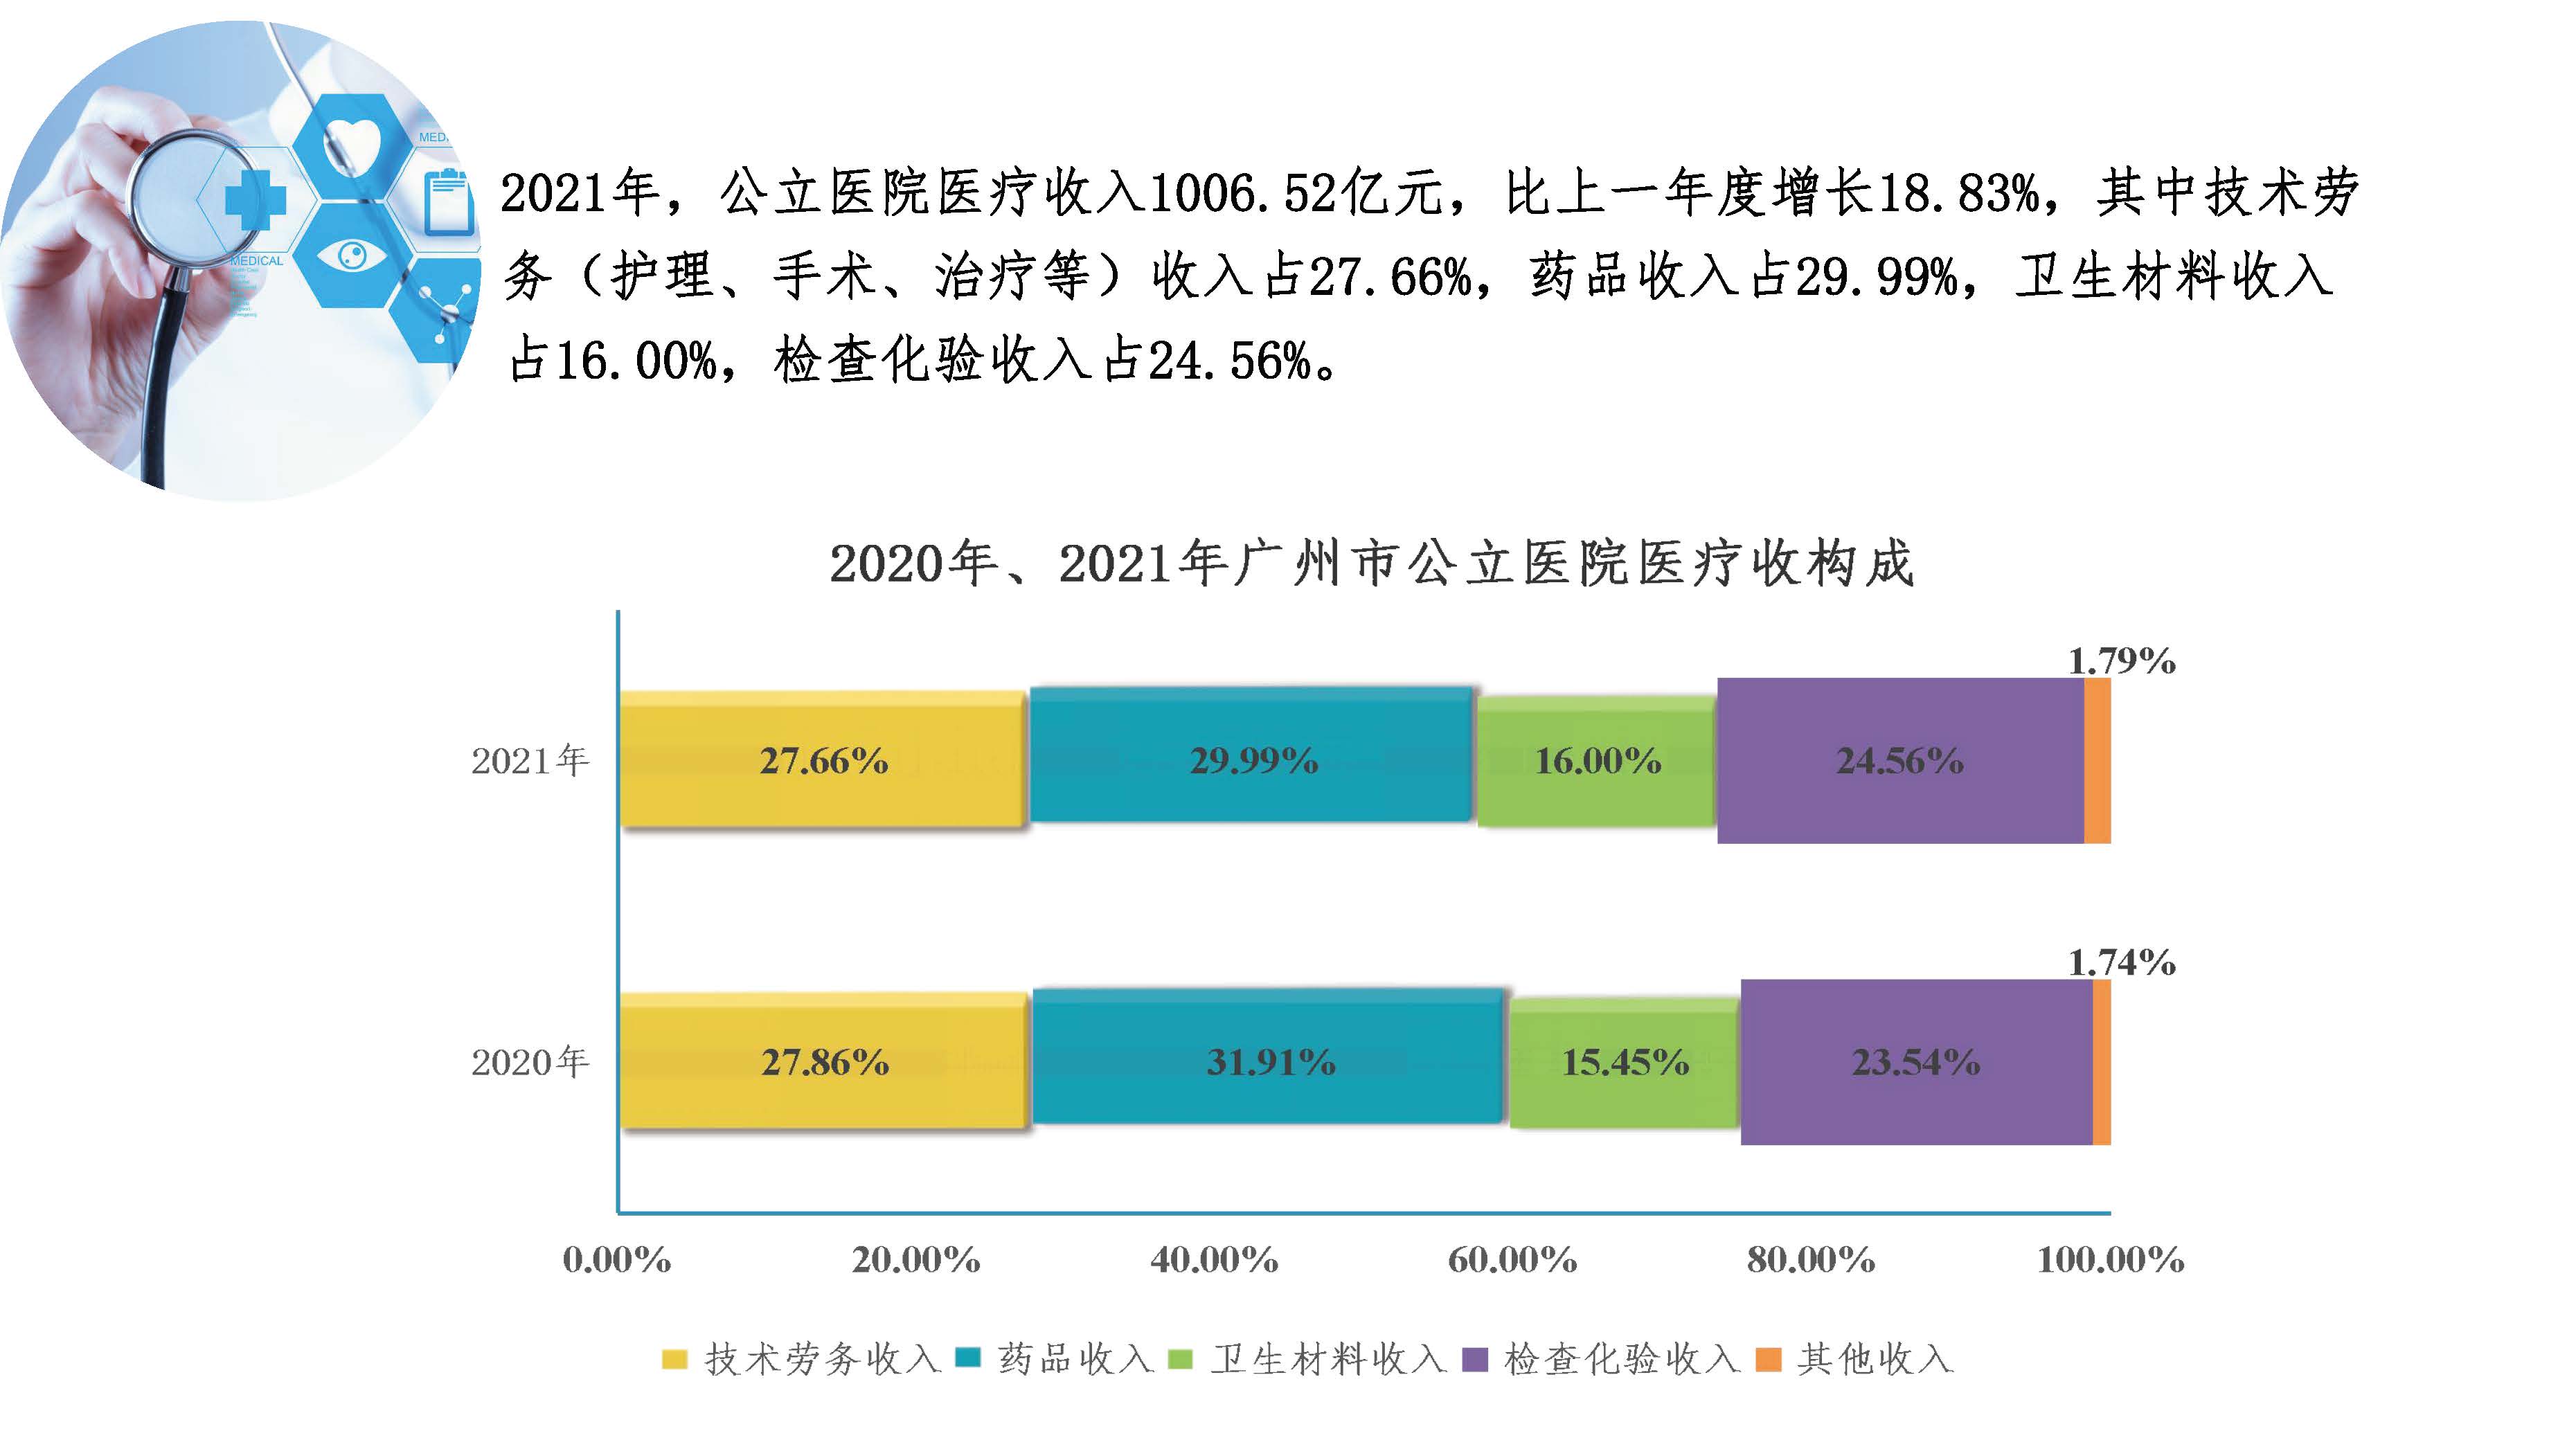 图解2021年广州市卫生事业发展情况20220424817_页面_11.jpg